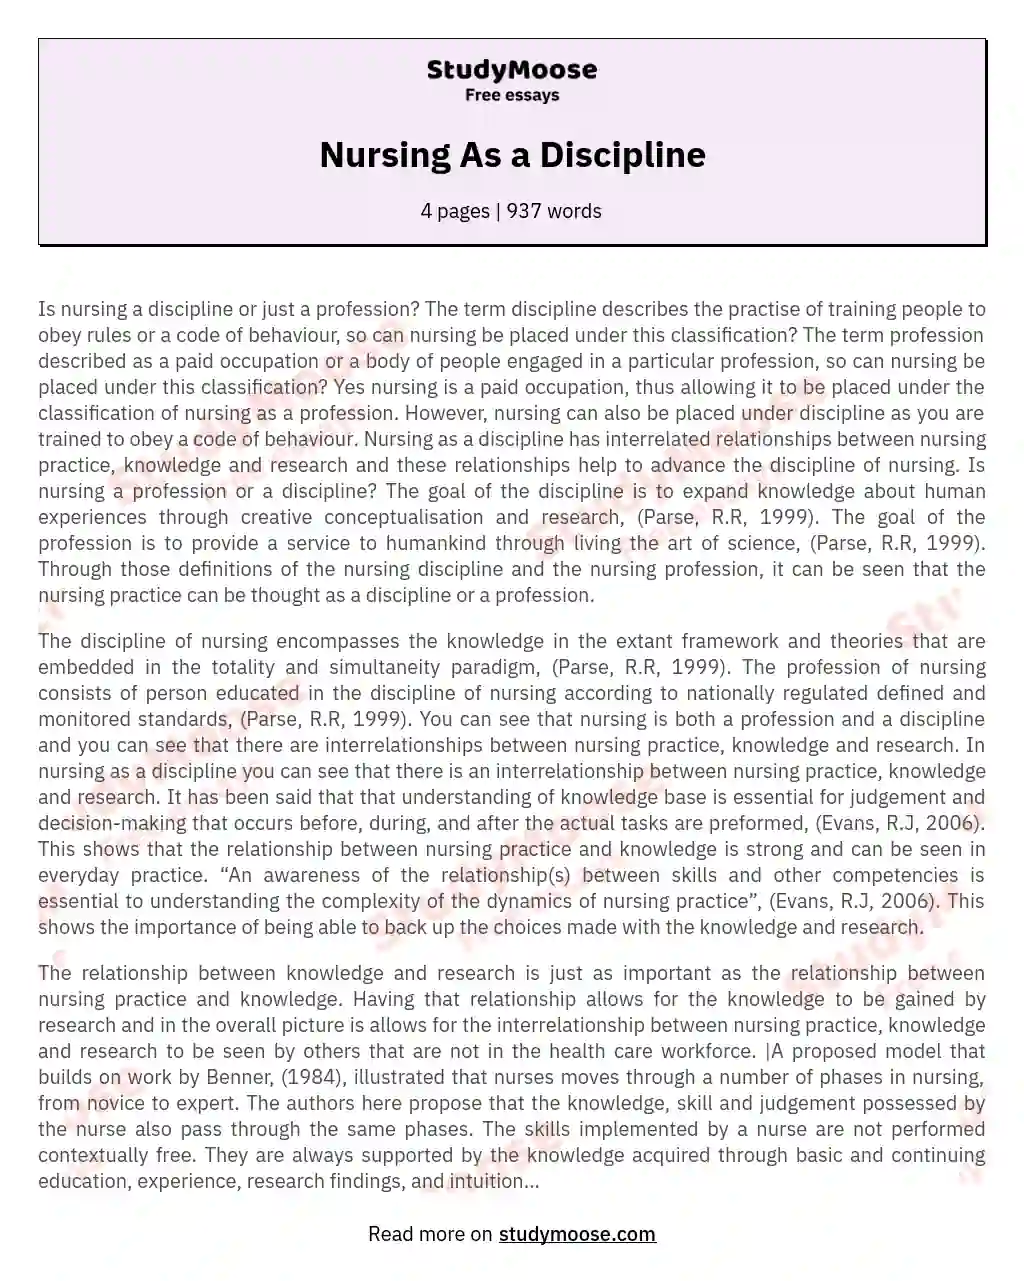 Nursing As a Discipline essay